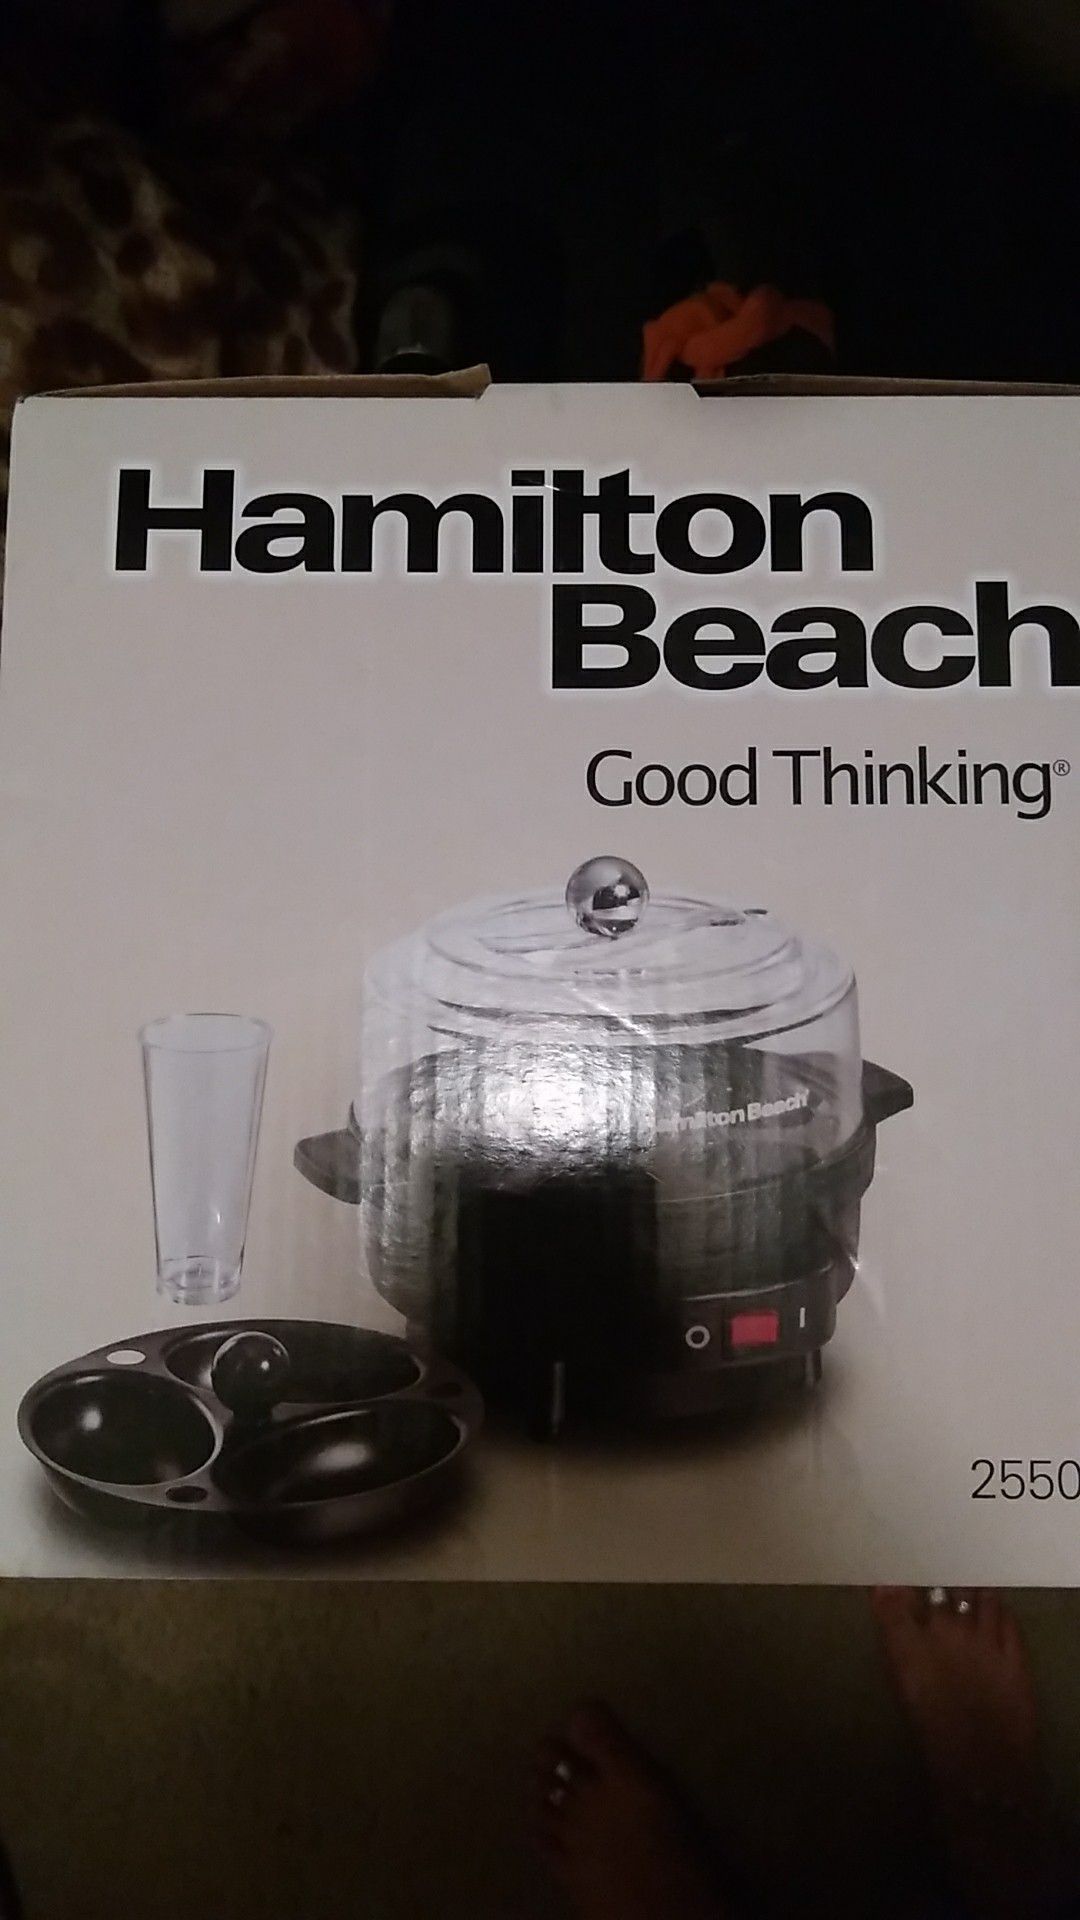 Hamilton Beach egg cooker